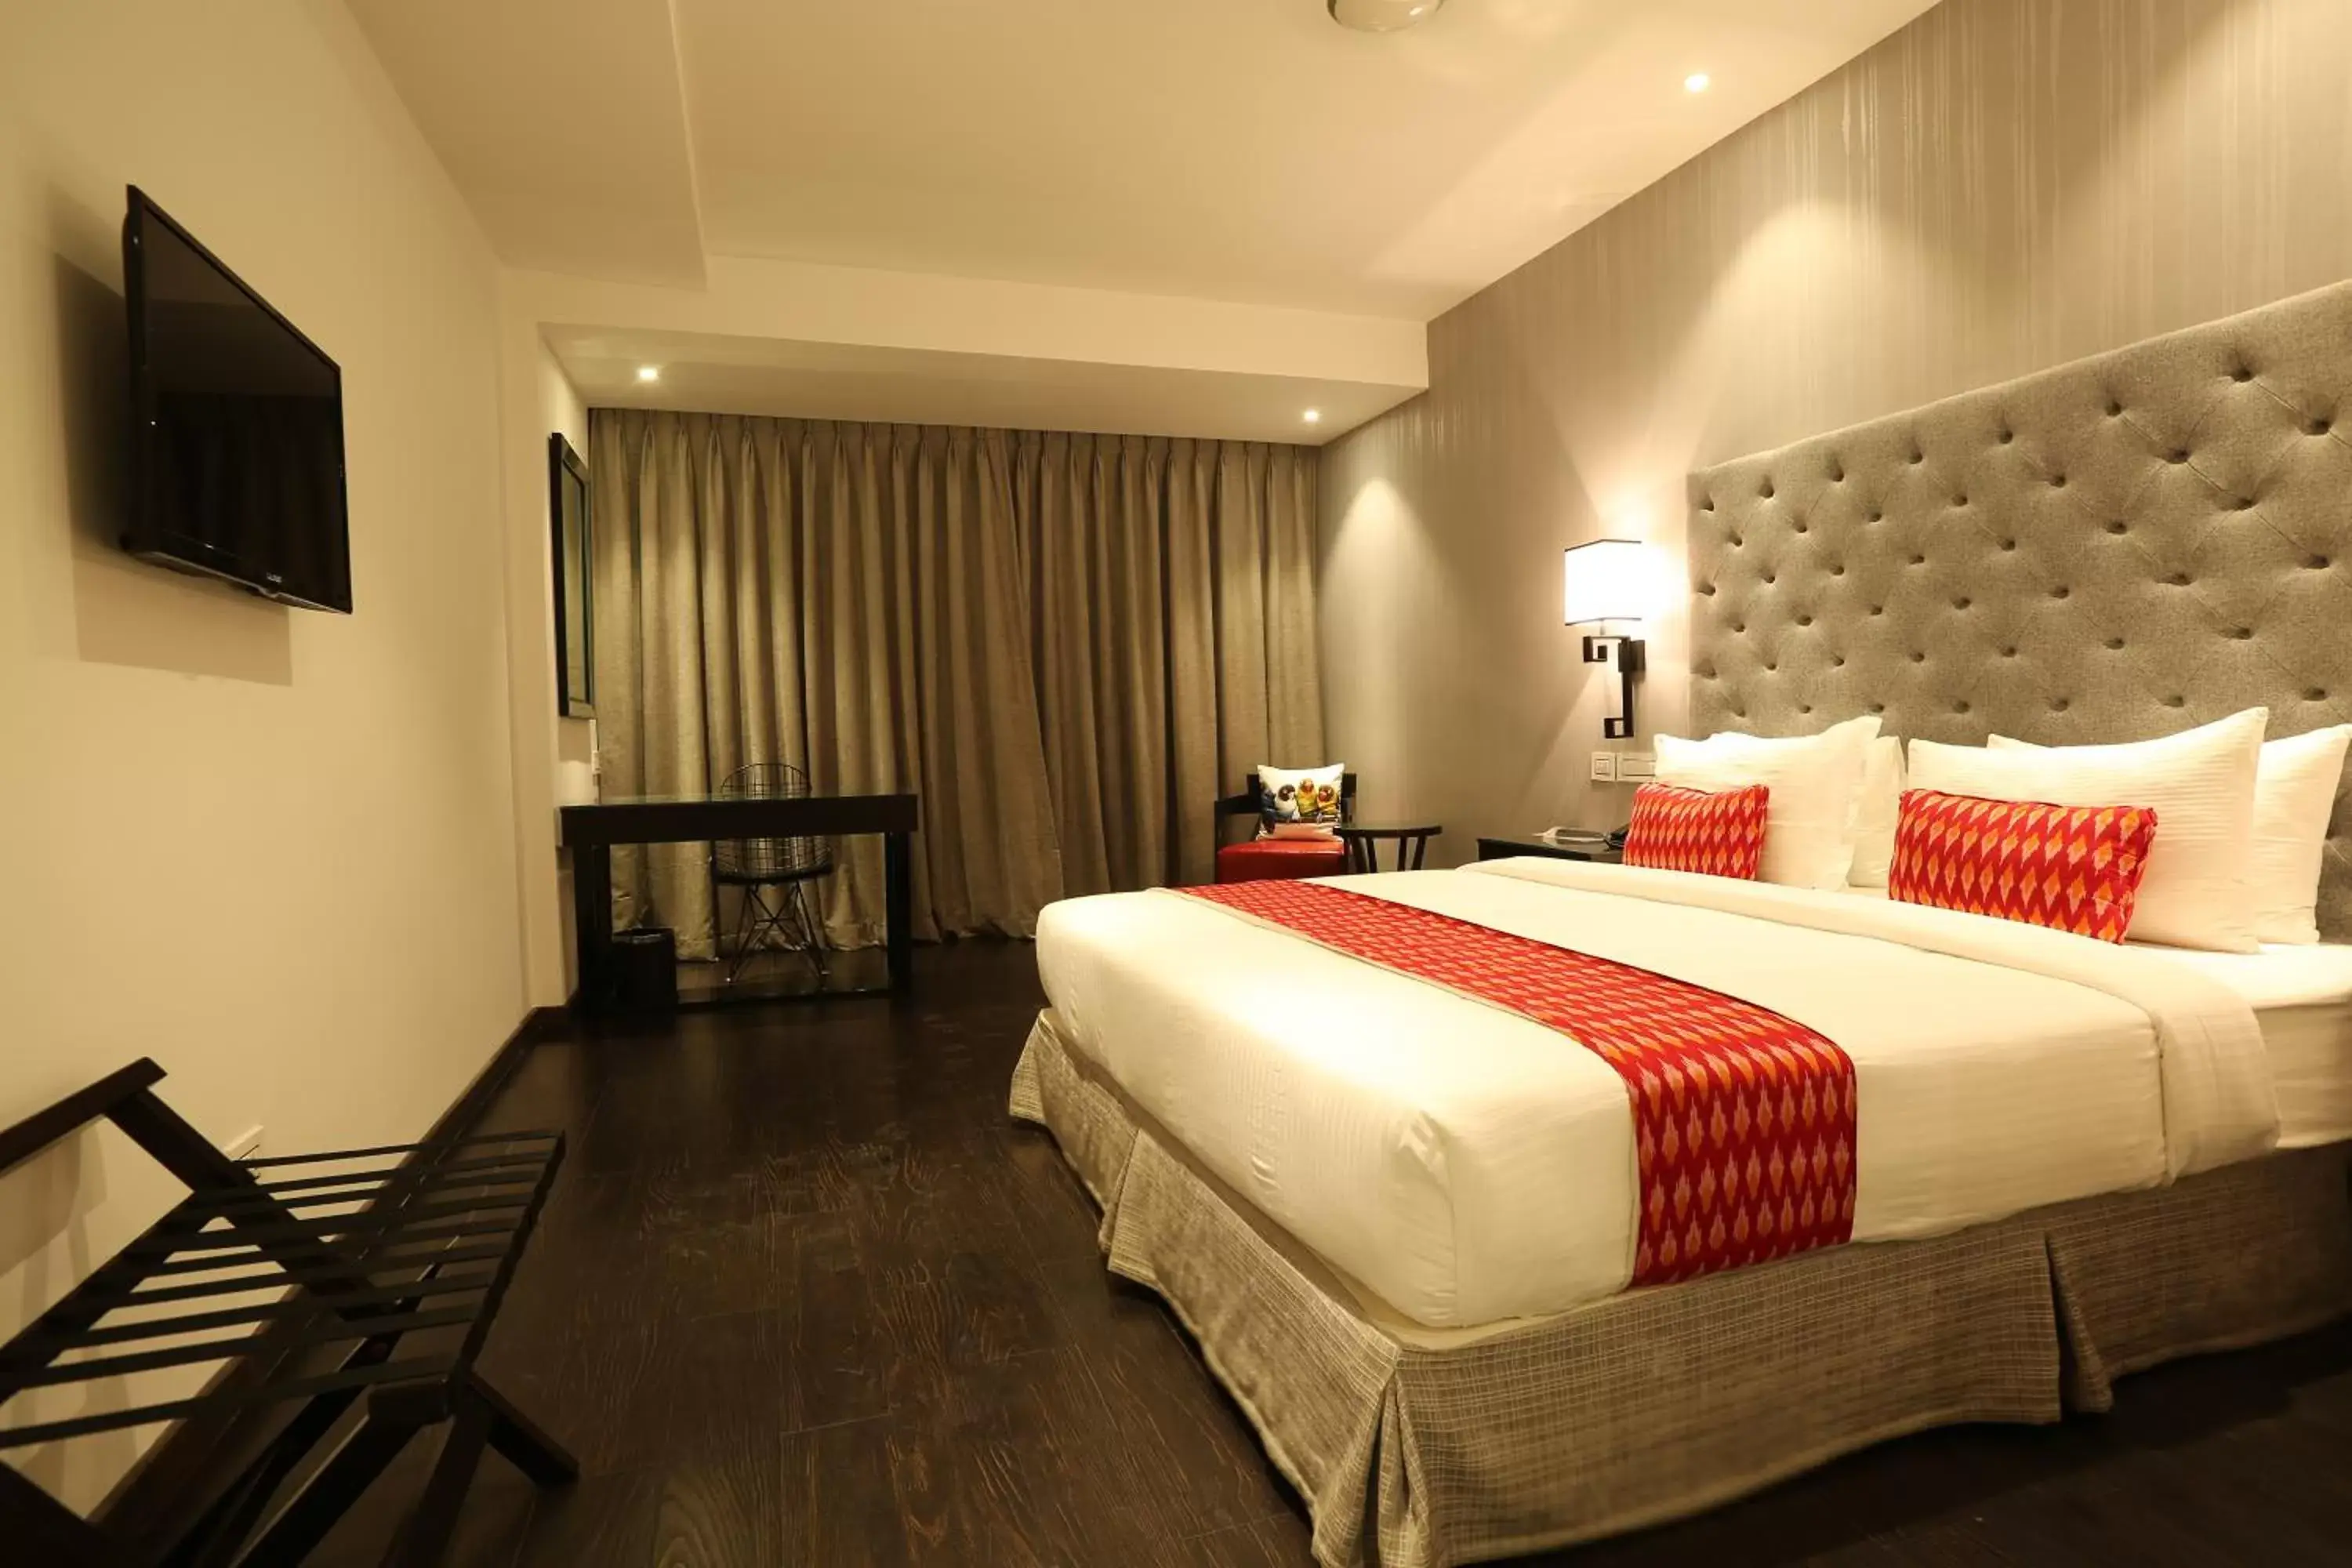 Bedroom, Room Photo in Hotel Deccan Serai, HITEC CITY, HYDERABAD